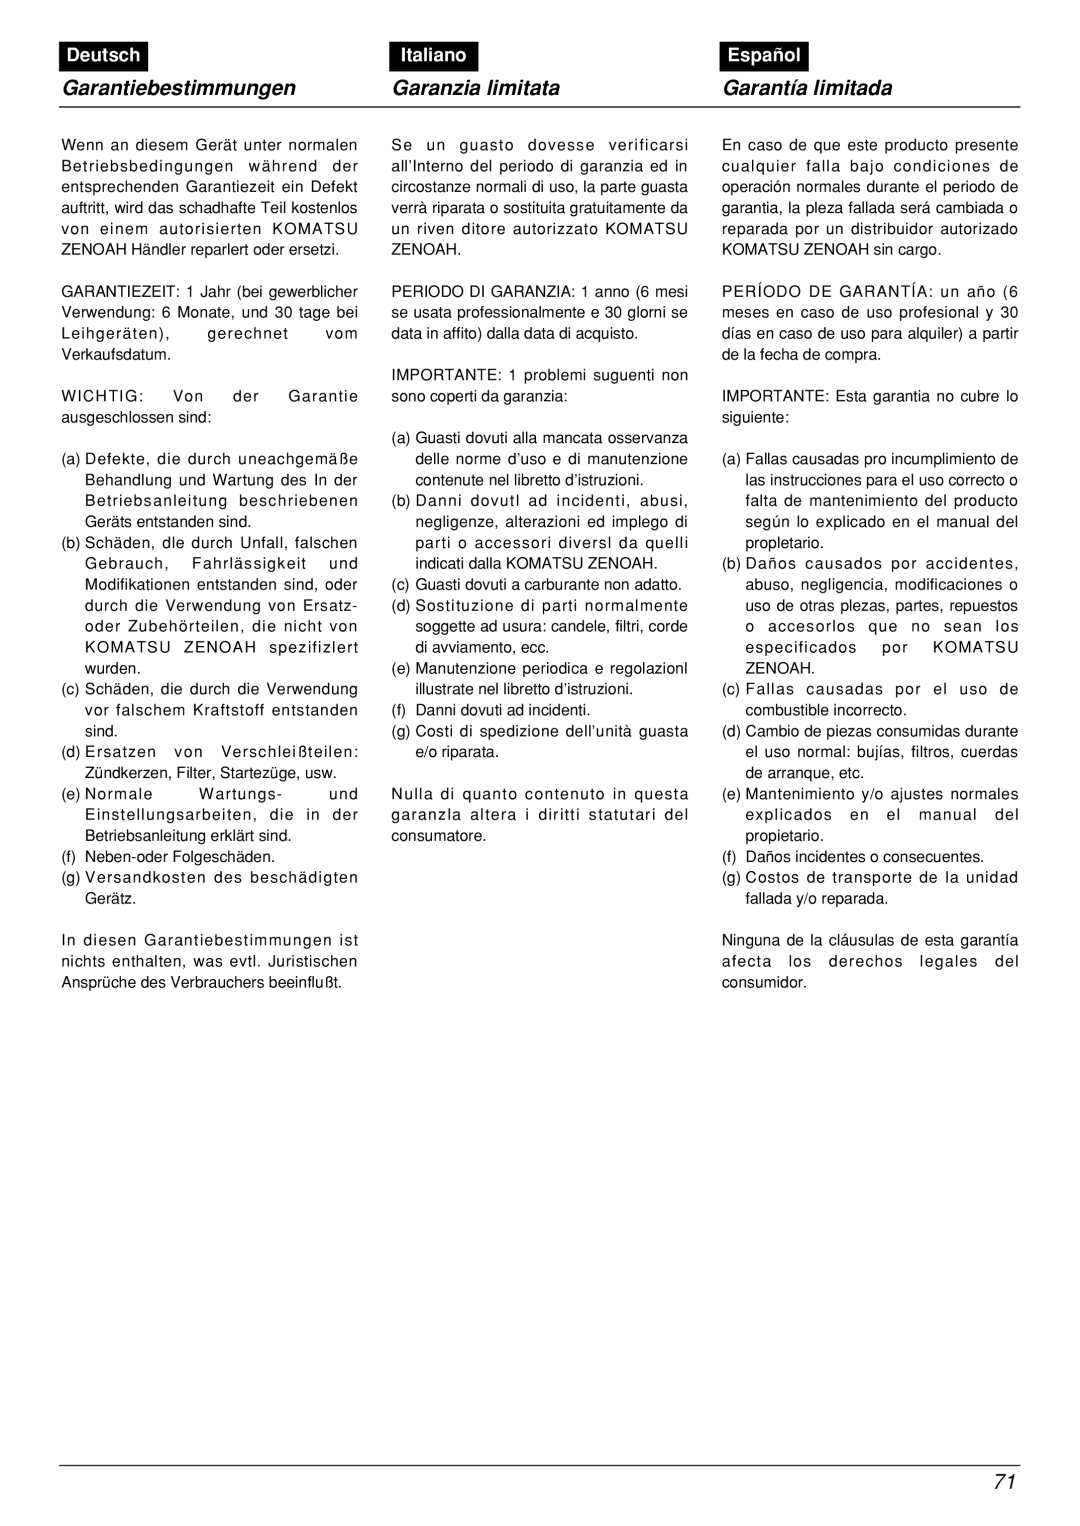 Zenoah BCX2601DL manual Garantiebestimmungen, Garanzia limitata, Garantía limitada, Deutsch, Italiano, Español 